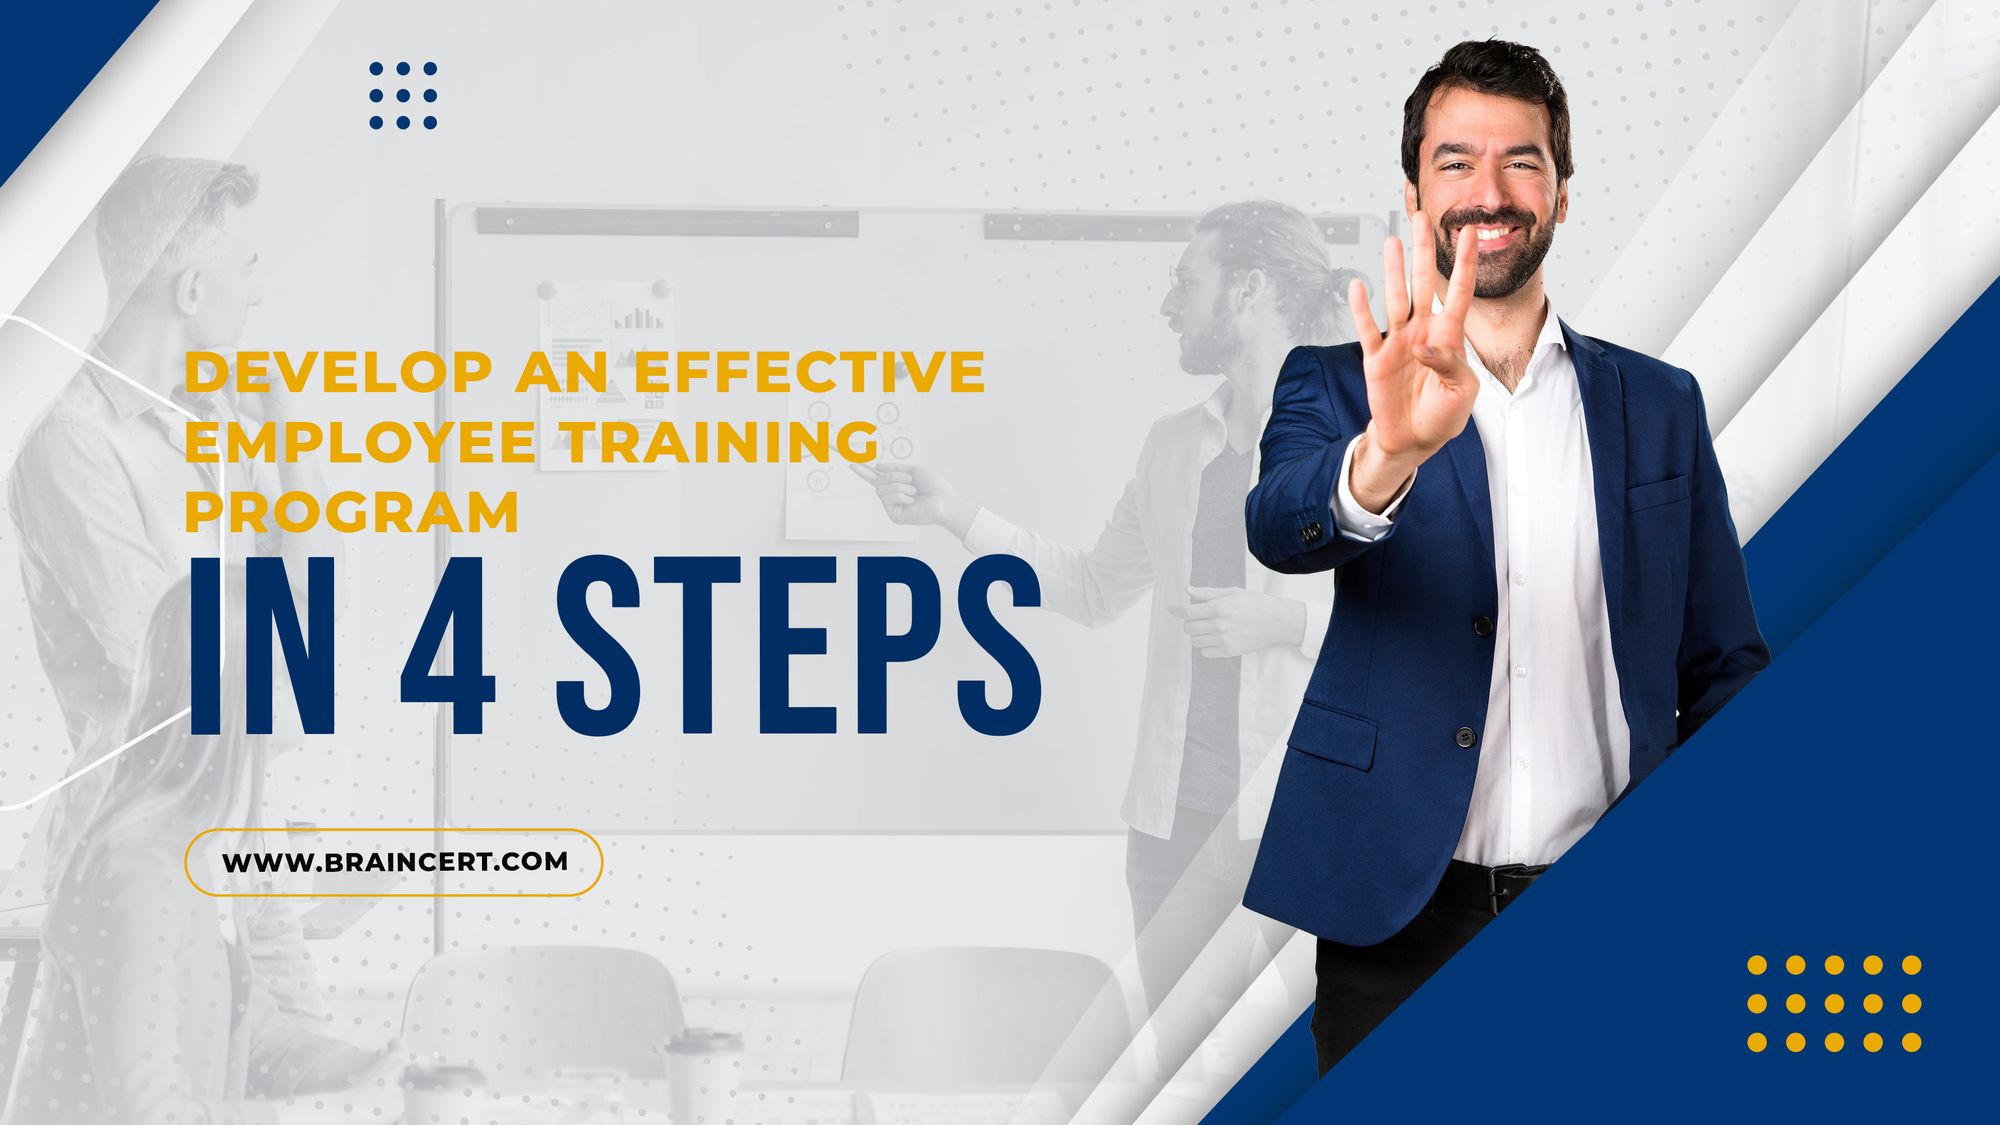 Develop an Effective Employee Training Program in 4 Steps!